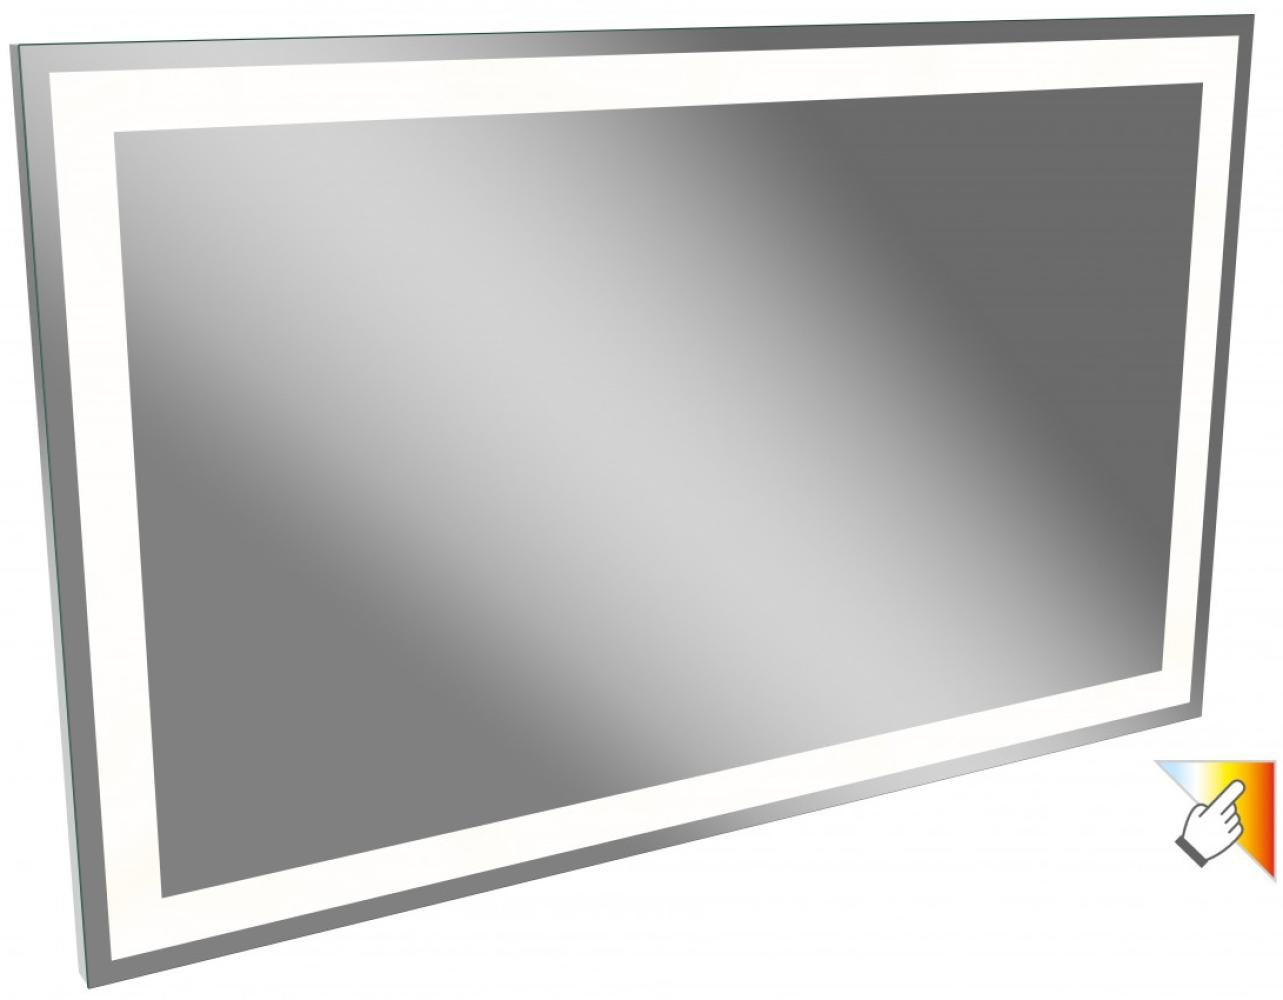 Lanzet P5 Spiegelelement 138 cm mit 3 Helligkeitsstufen Bild 1